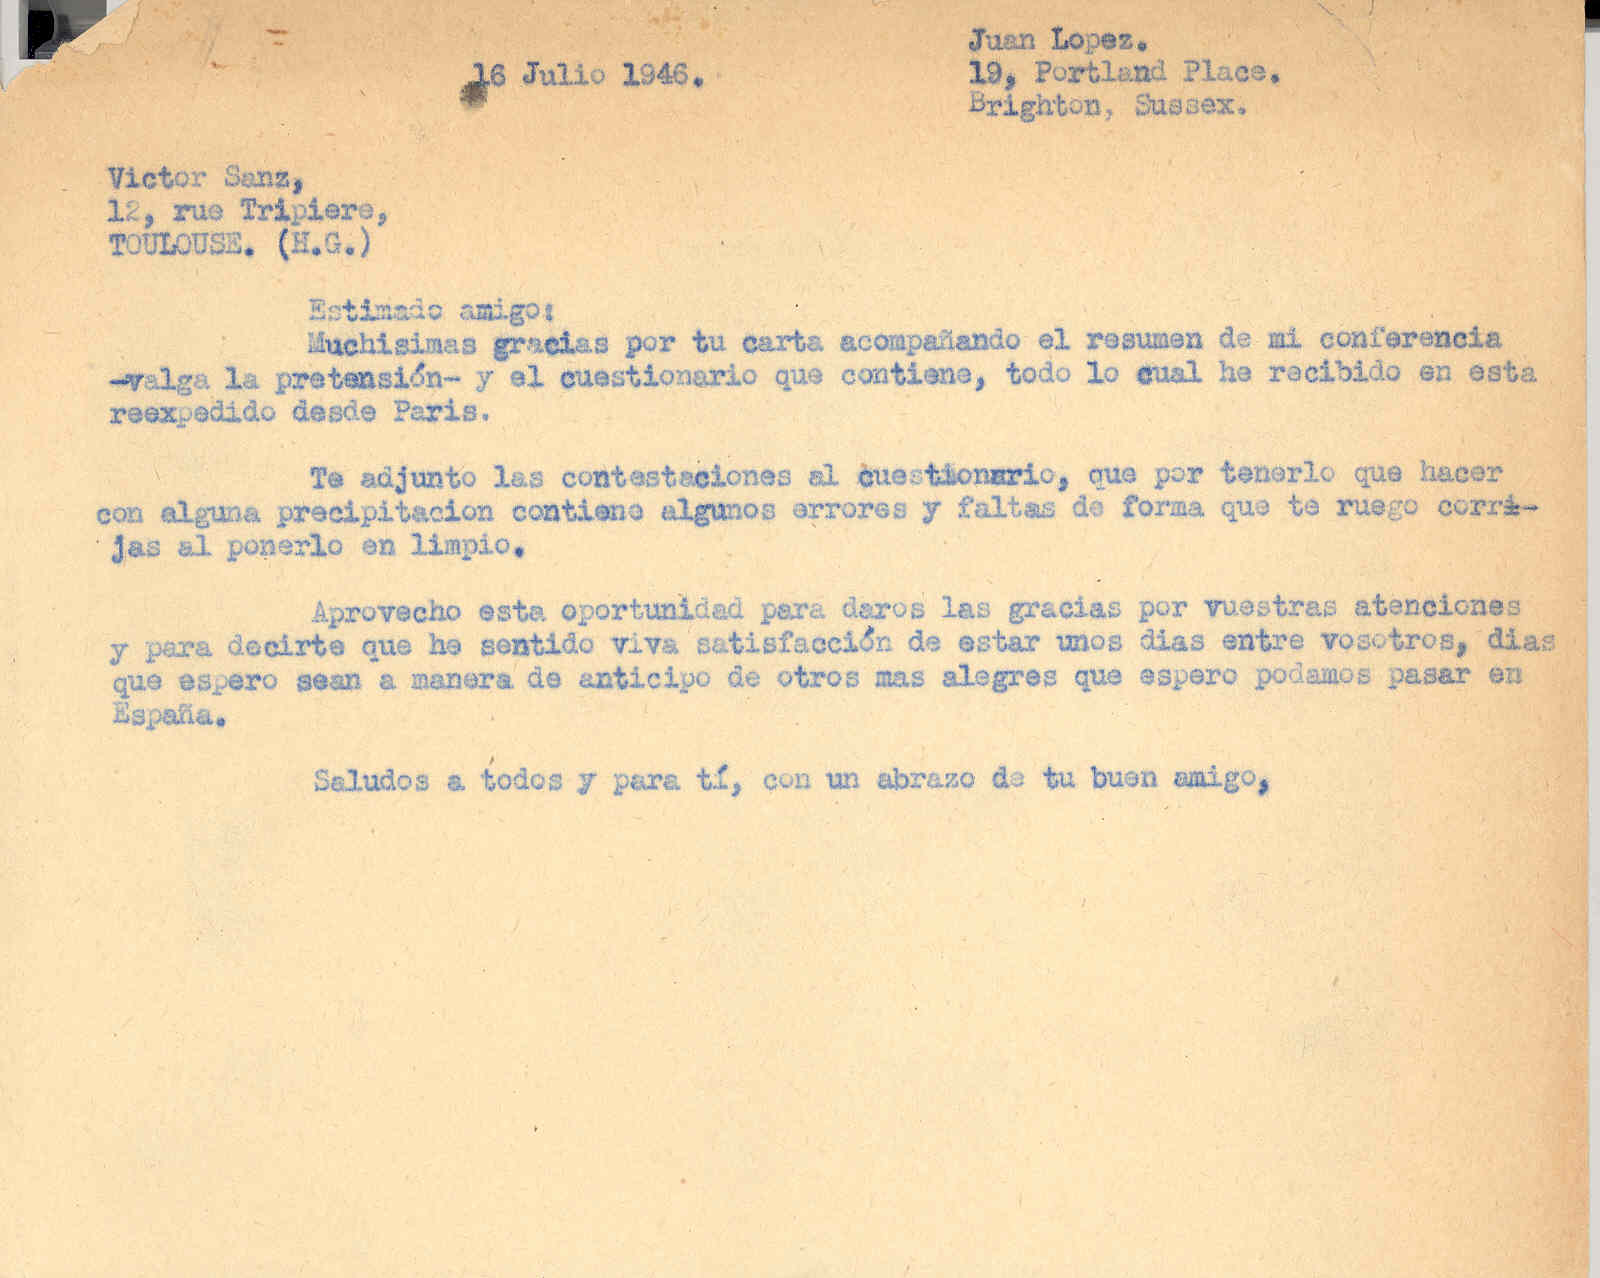 Carta a Víctor Sanz agradeciéndole su carta y enviándole la contestación a un cuestionario sobre la situación de los refugiados españoles en Gran Bretaña.